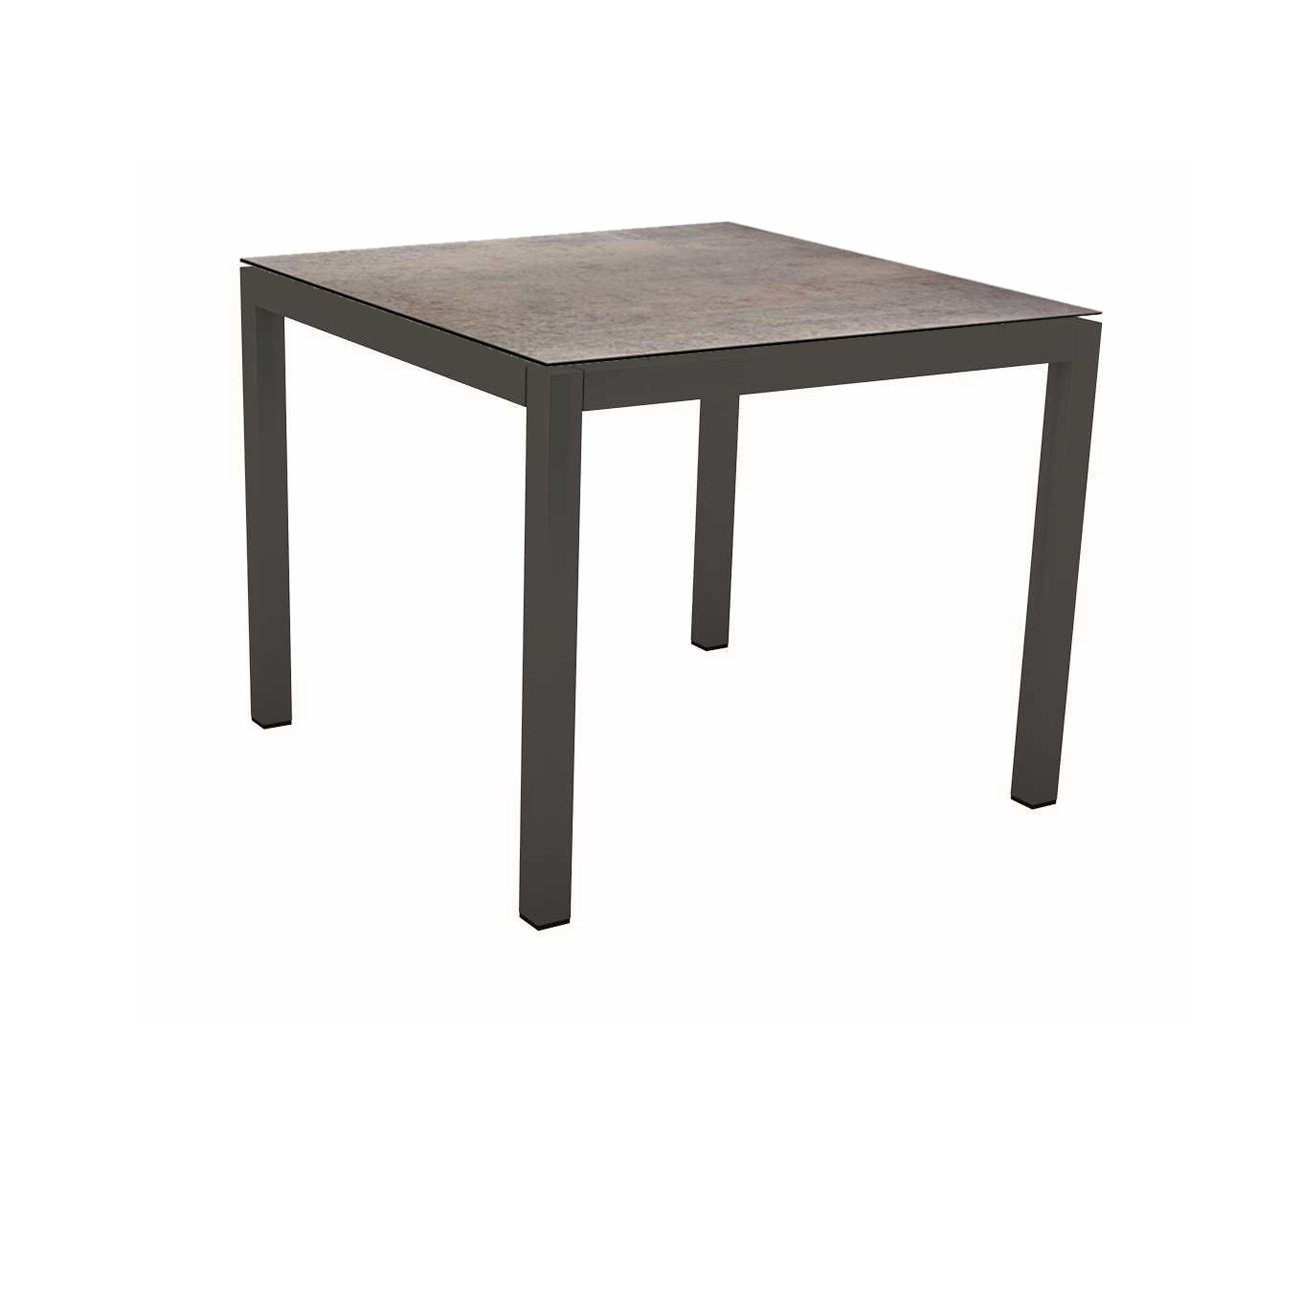 Stern Tischsystem Gartentisch, Gestell Aluminium anthrazit, Tischplatte HPL Smoky, Maße: 80x80 cm